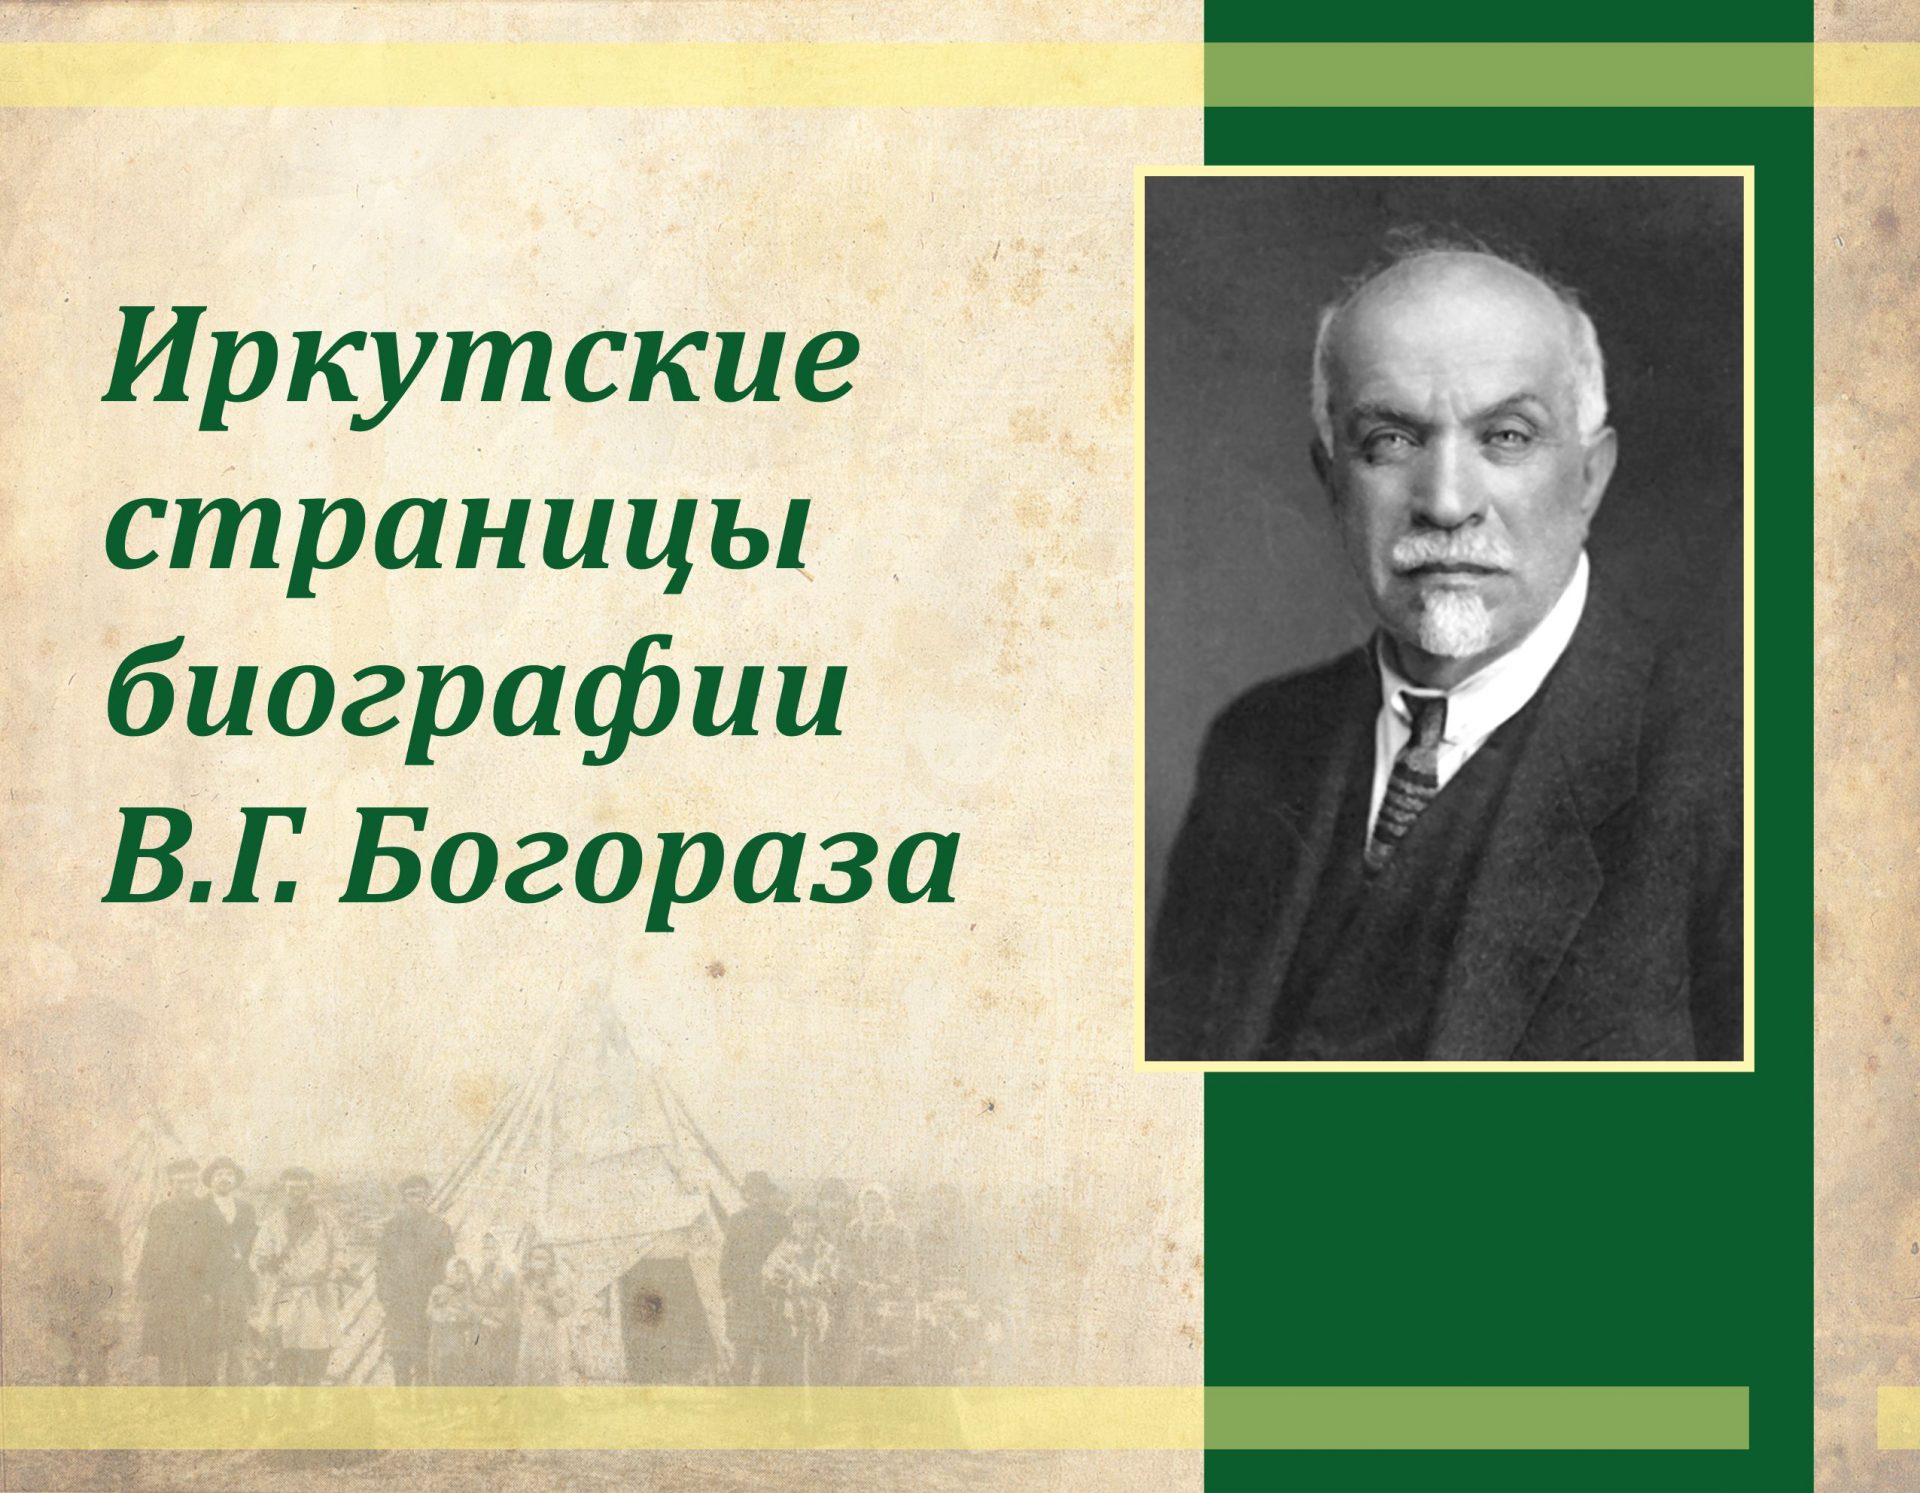 Выставка “Иркутские страницы биографии В.Г. Богораза”